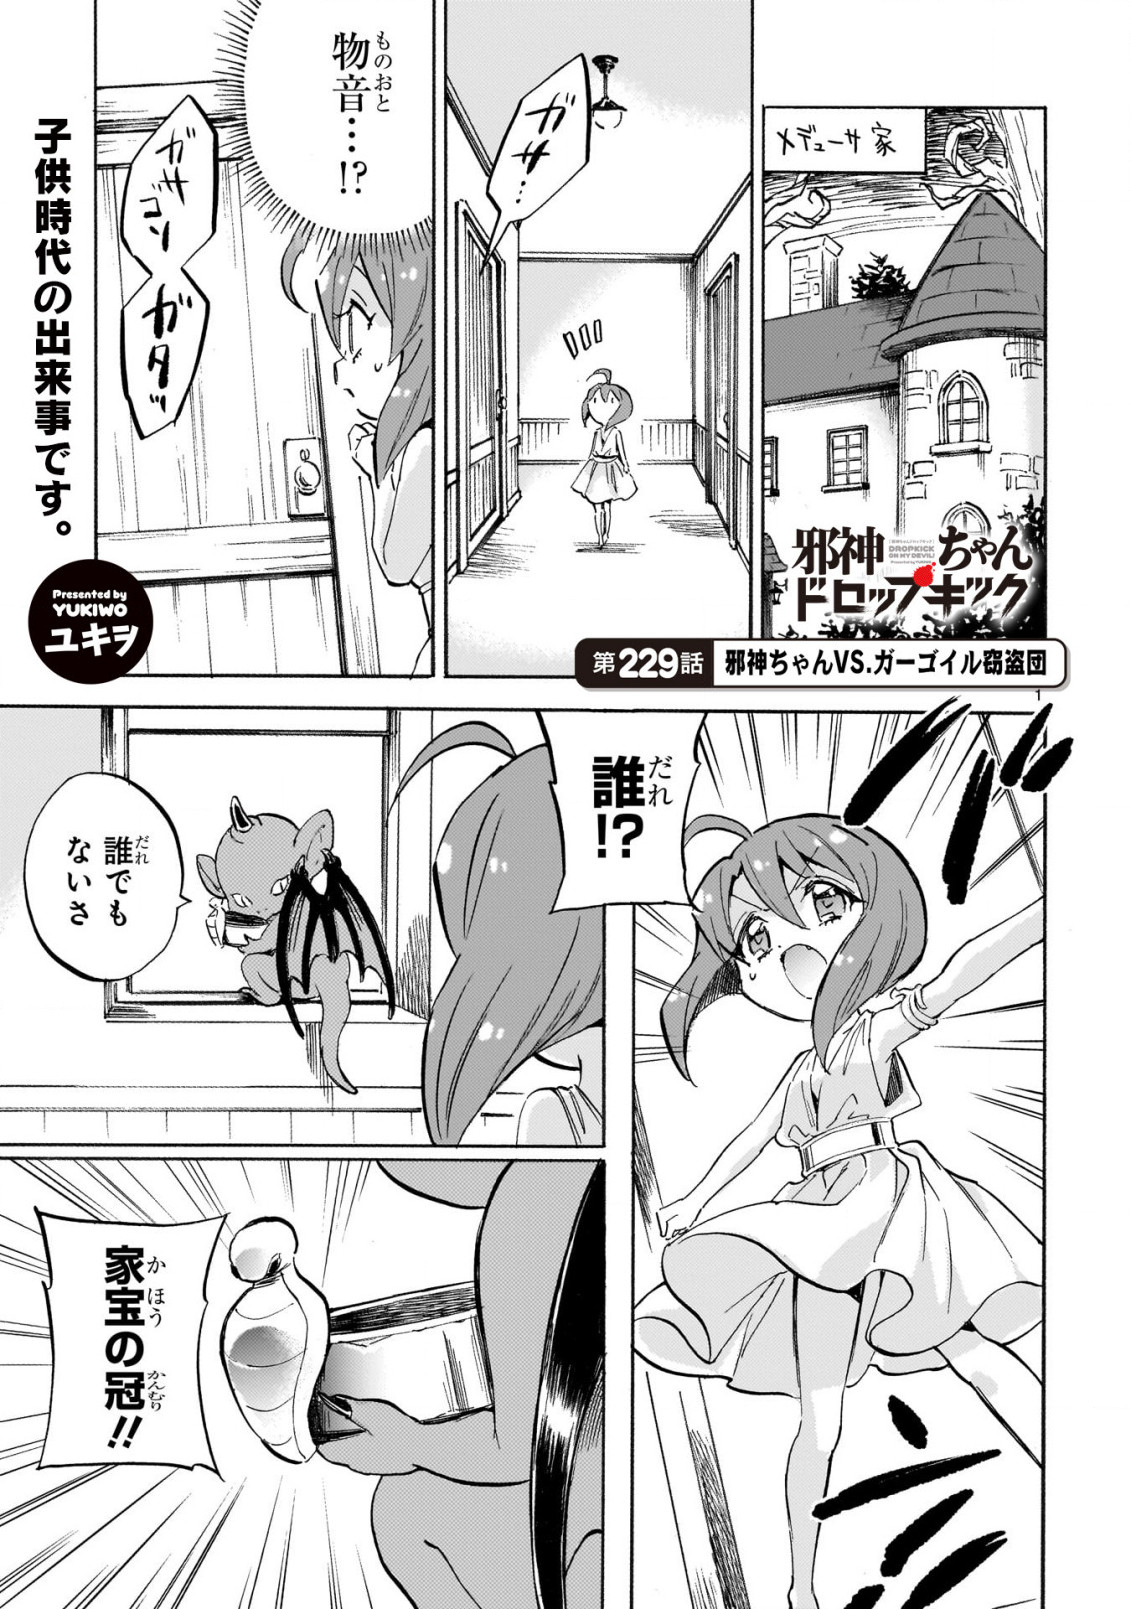 Jashin-chan Dropkick - Chapter 229 - Page 1